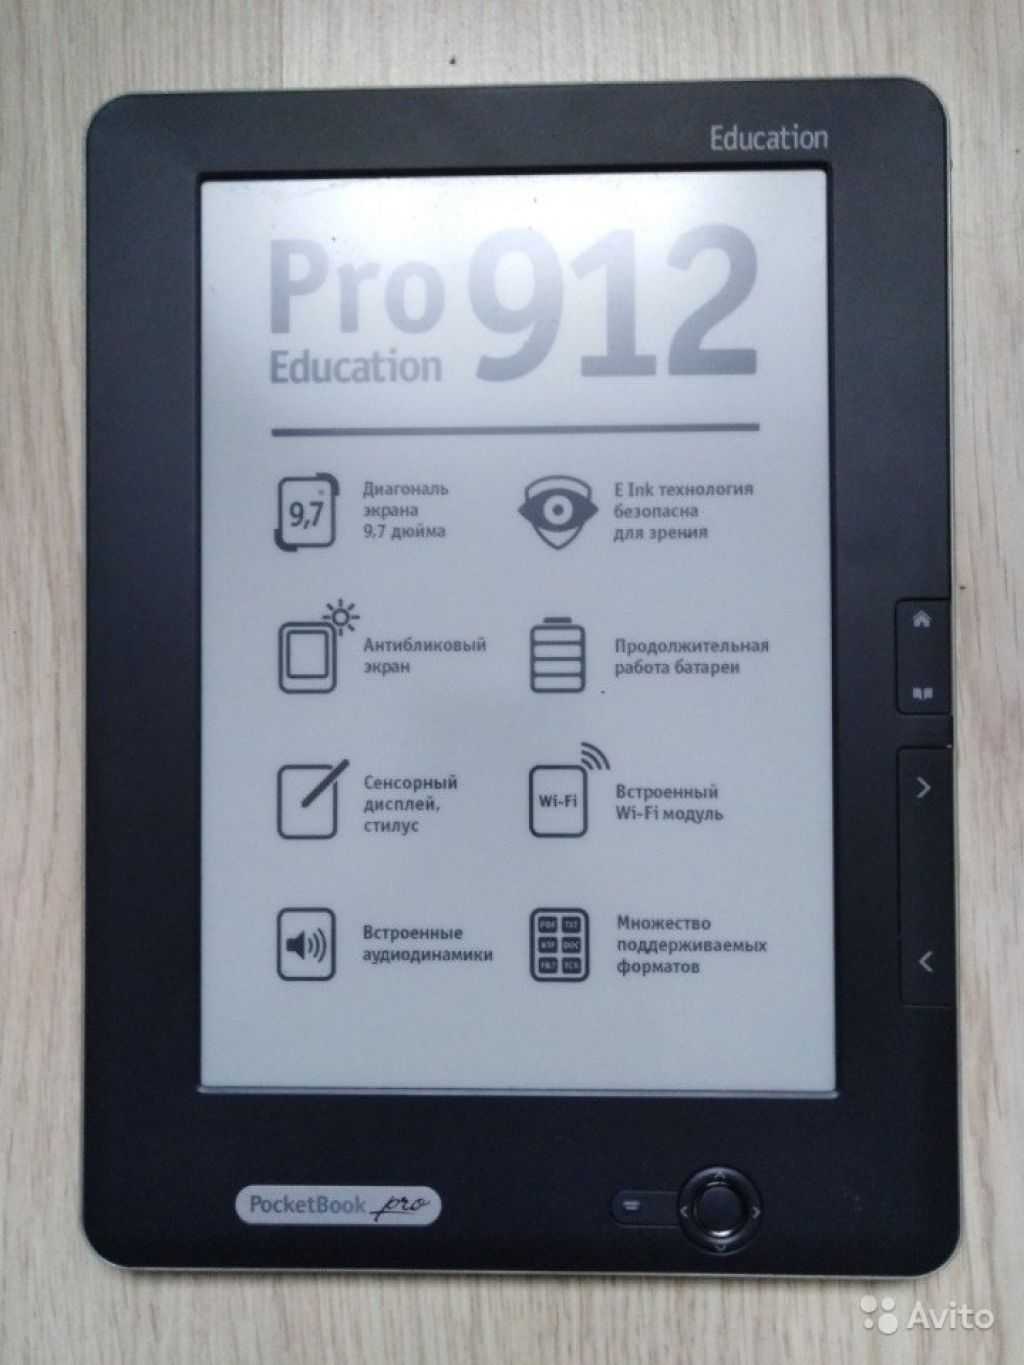 Pocketbook pro 912 в городе санкт-петербург